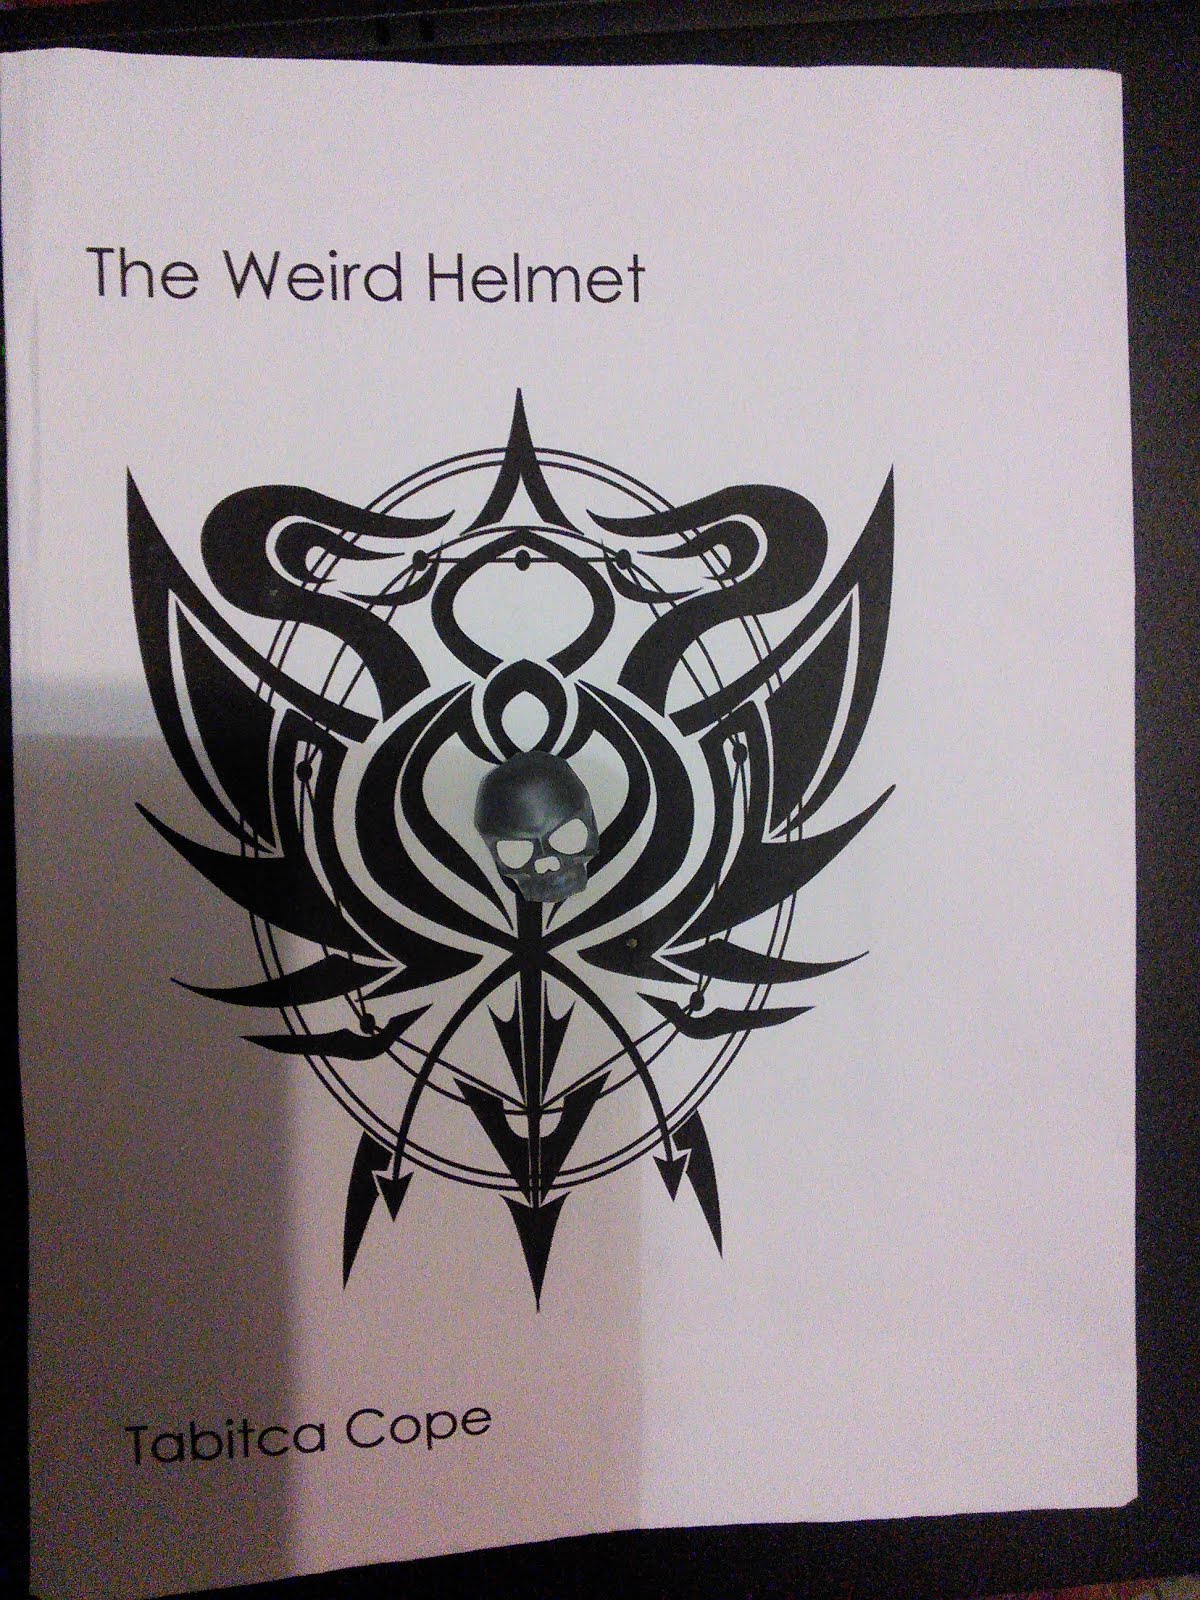 The Weird Helmet